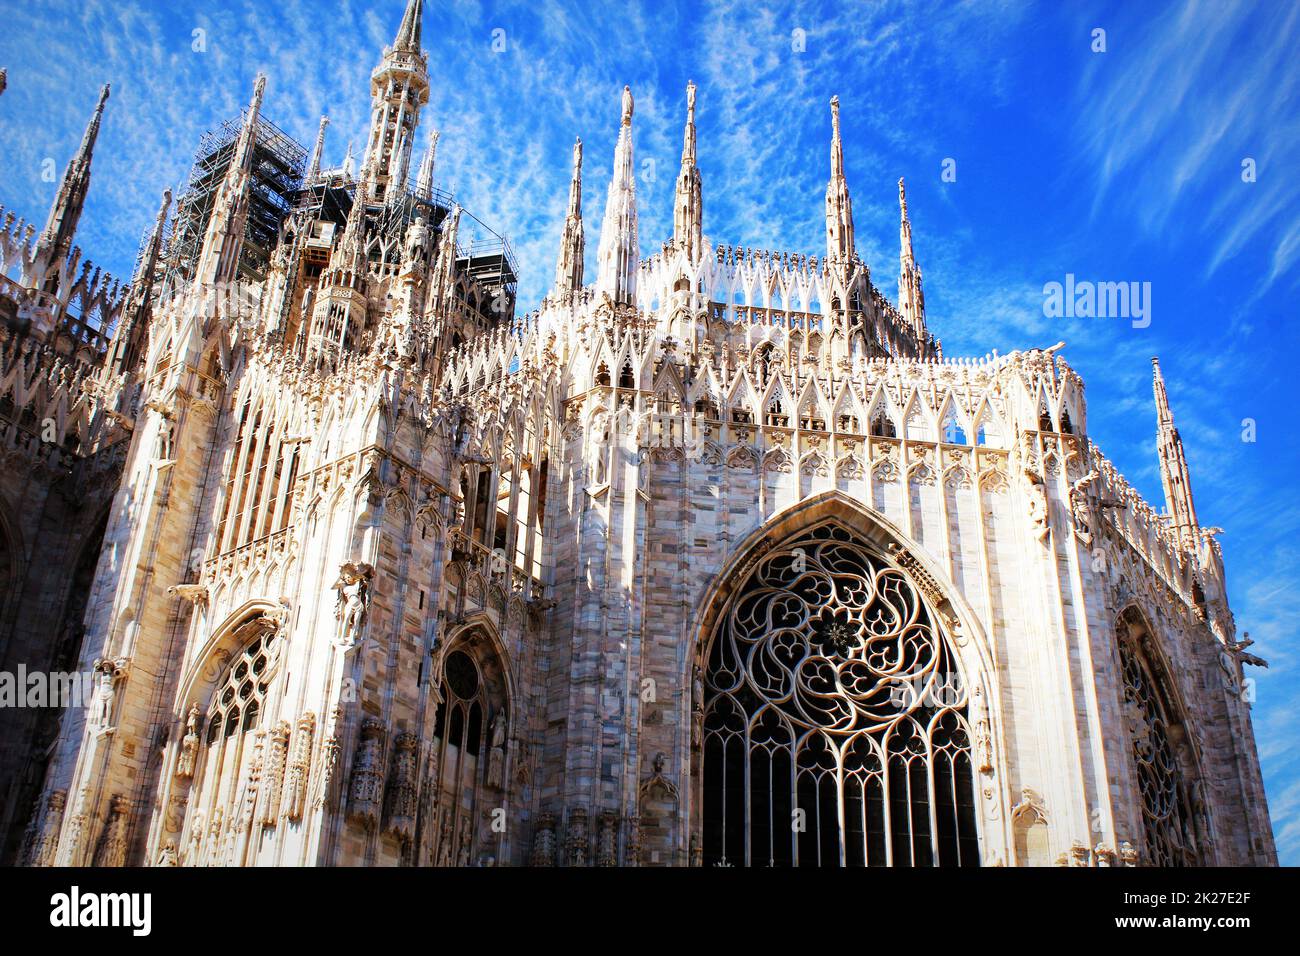 La cathédrale de Milan, le Duomo di Milano, l'une des plus grandes églises au monde Banque D'Images